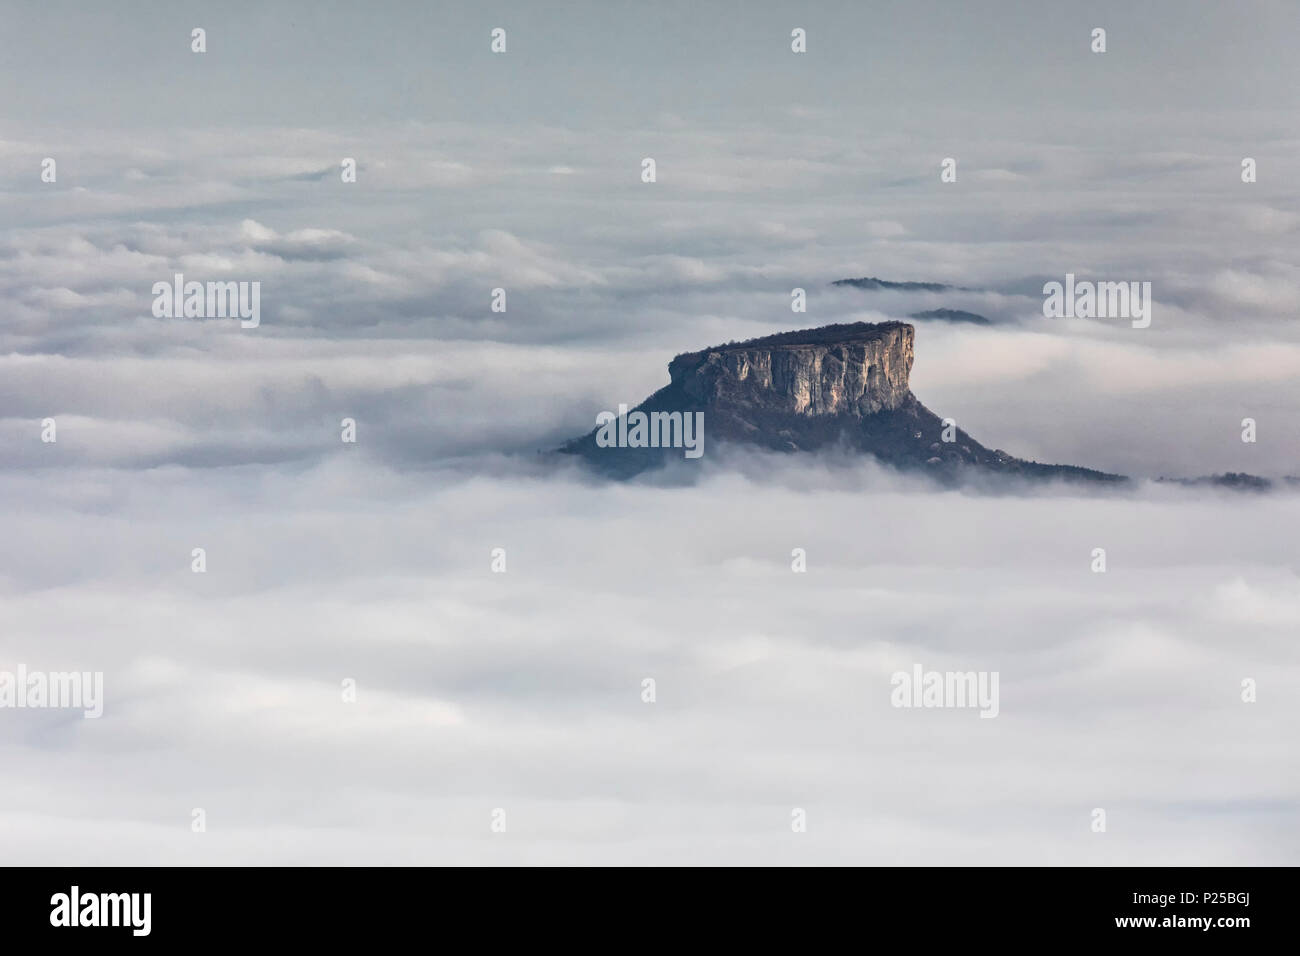 La pierre bismantova émerge du brouillard, province de Reggio Emilia, l'Émilie-Romagne, Italie, Europe district Banque D'Images